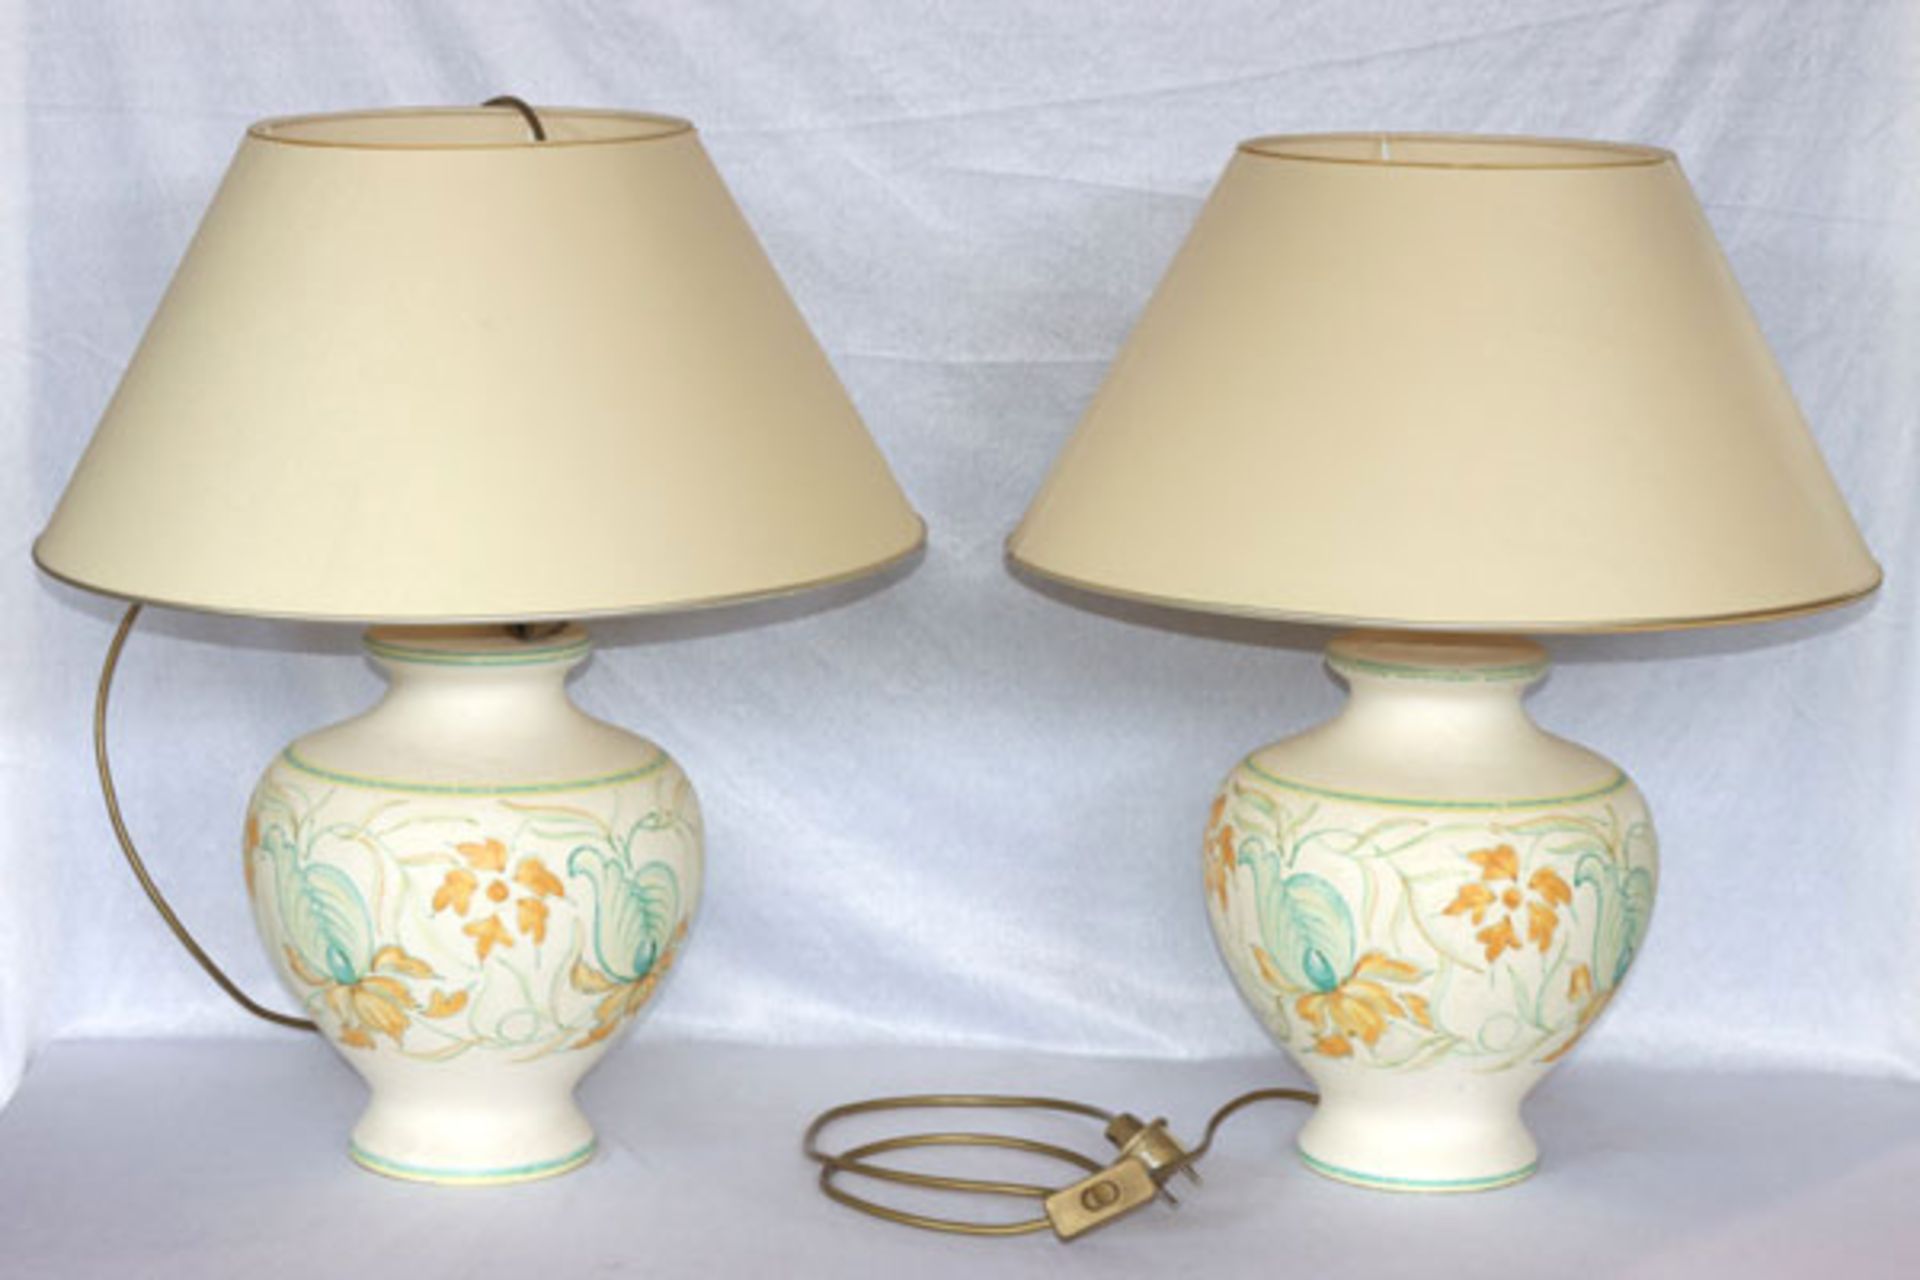 Paar Tischlampen mit Keramik Lampenfuß, Floraldekor, und beigen Schirmchen, teils fleckig, H 60